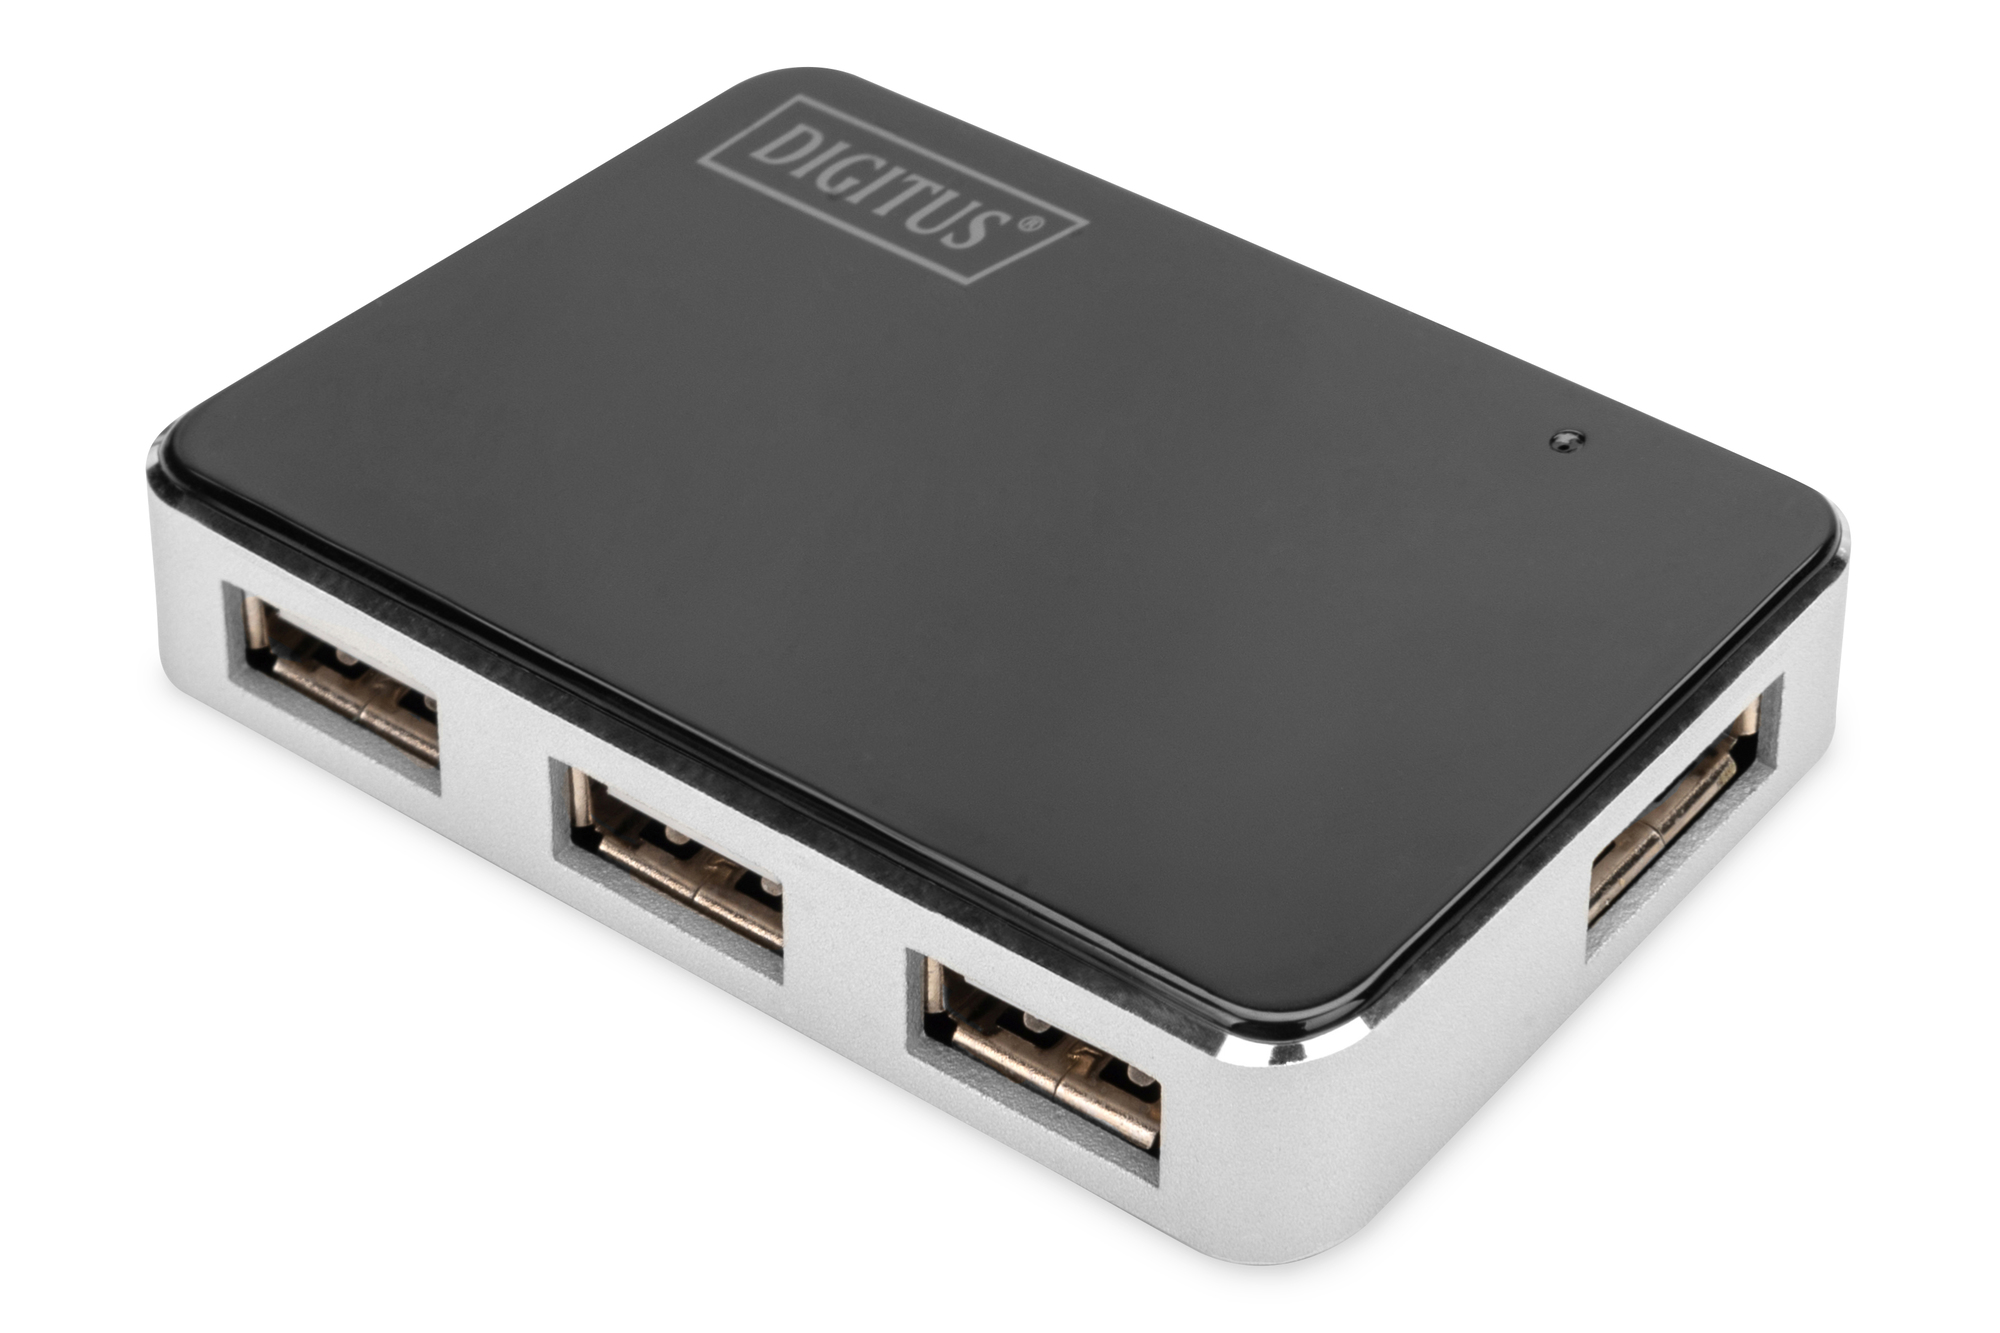 SP-USB-HUB-4-POWER-1 - Powered USB Hub, 4-Port USB 3.0 Hub